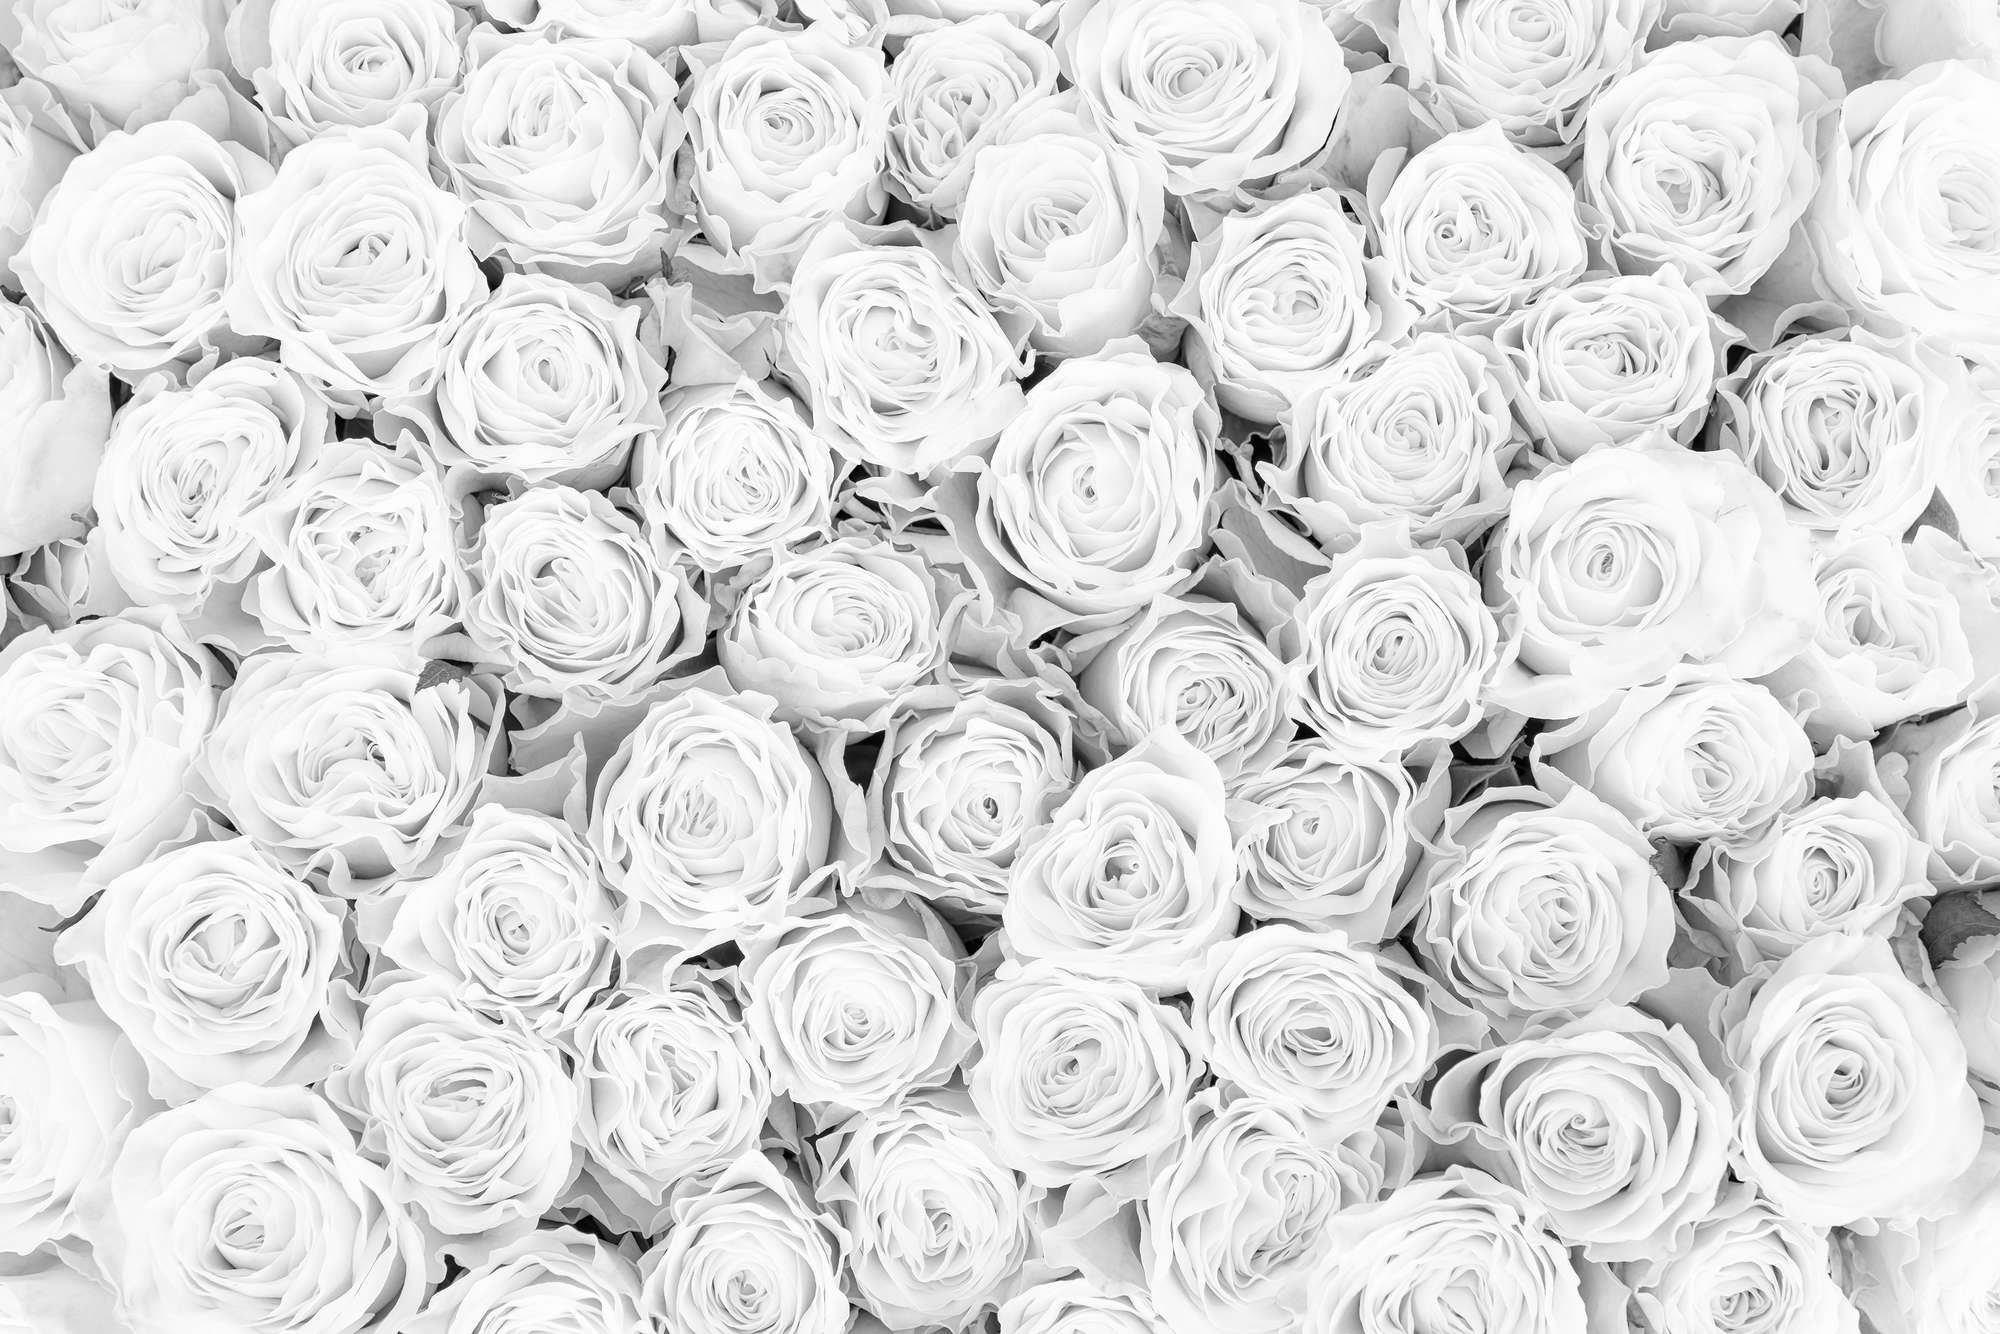             Piante Carta da parati Rose bianche su vello liscio Premium
        